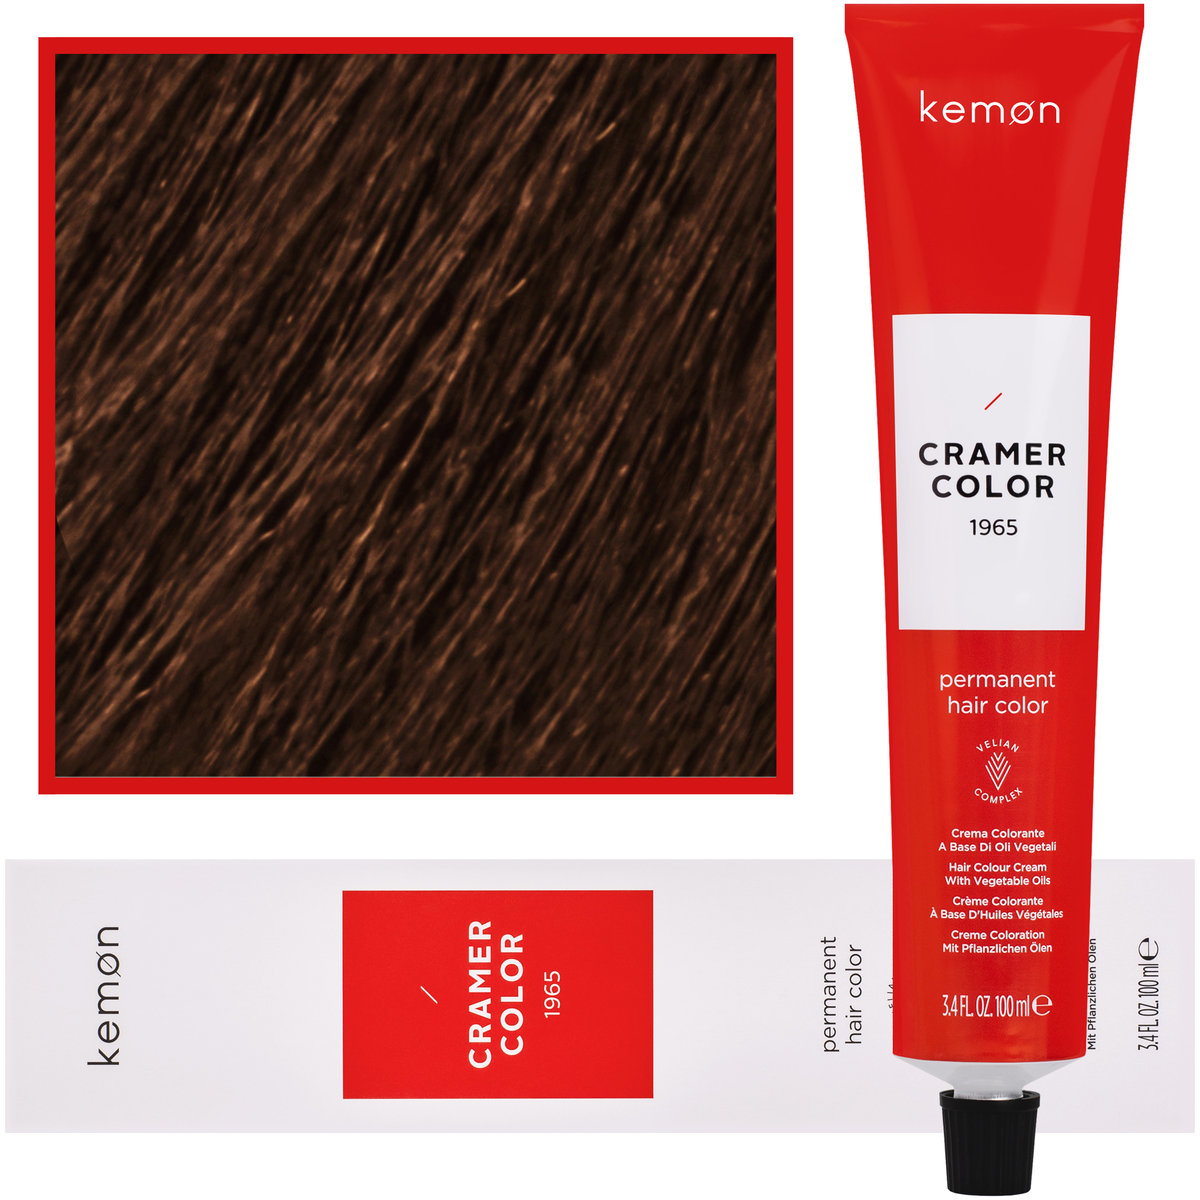 Zdjęcia - Farba do włosów Kemon , Cramer Color 100ml kremowa  z olejkami roślinnymi 8, 